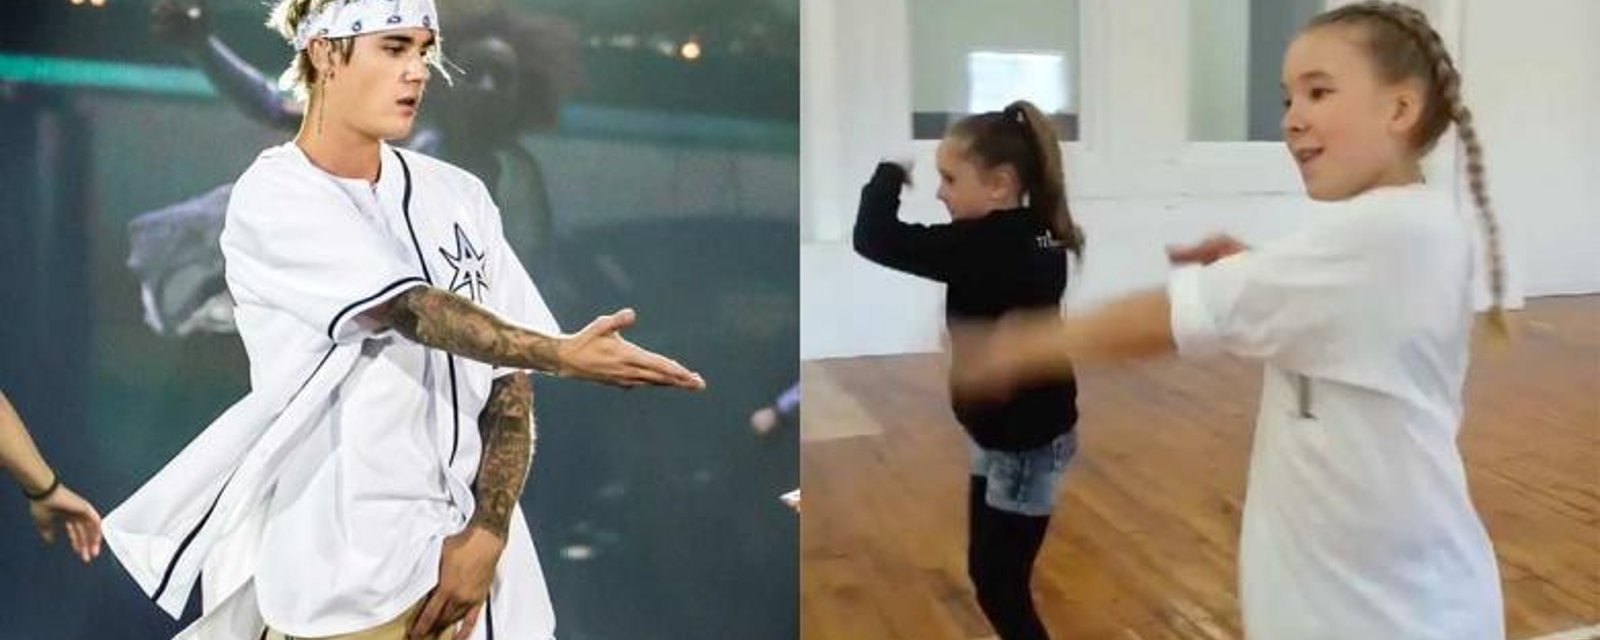 Ces 2 jeunes soeurs québécoises danseront avec leur idole, Justin Bieber!